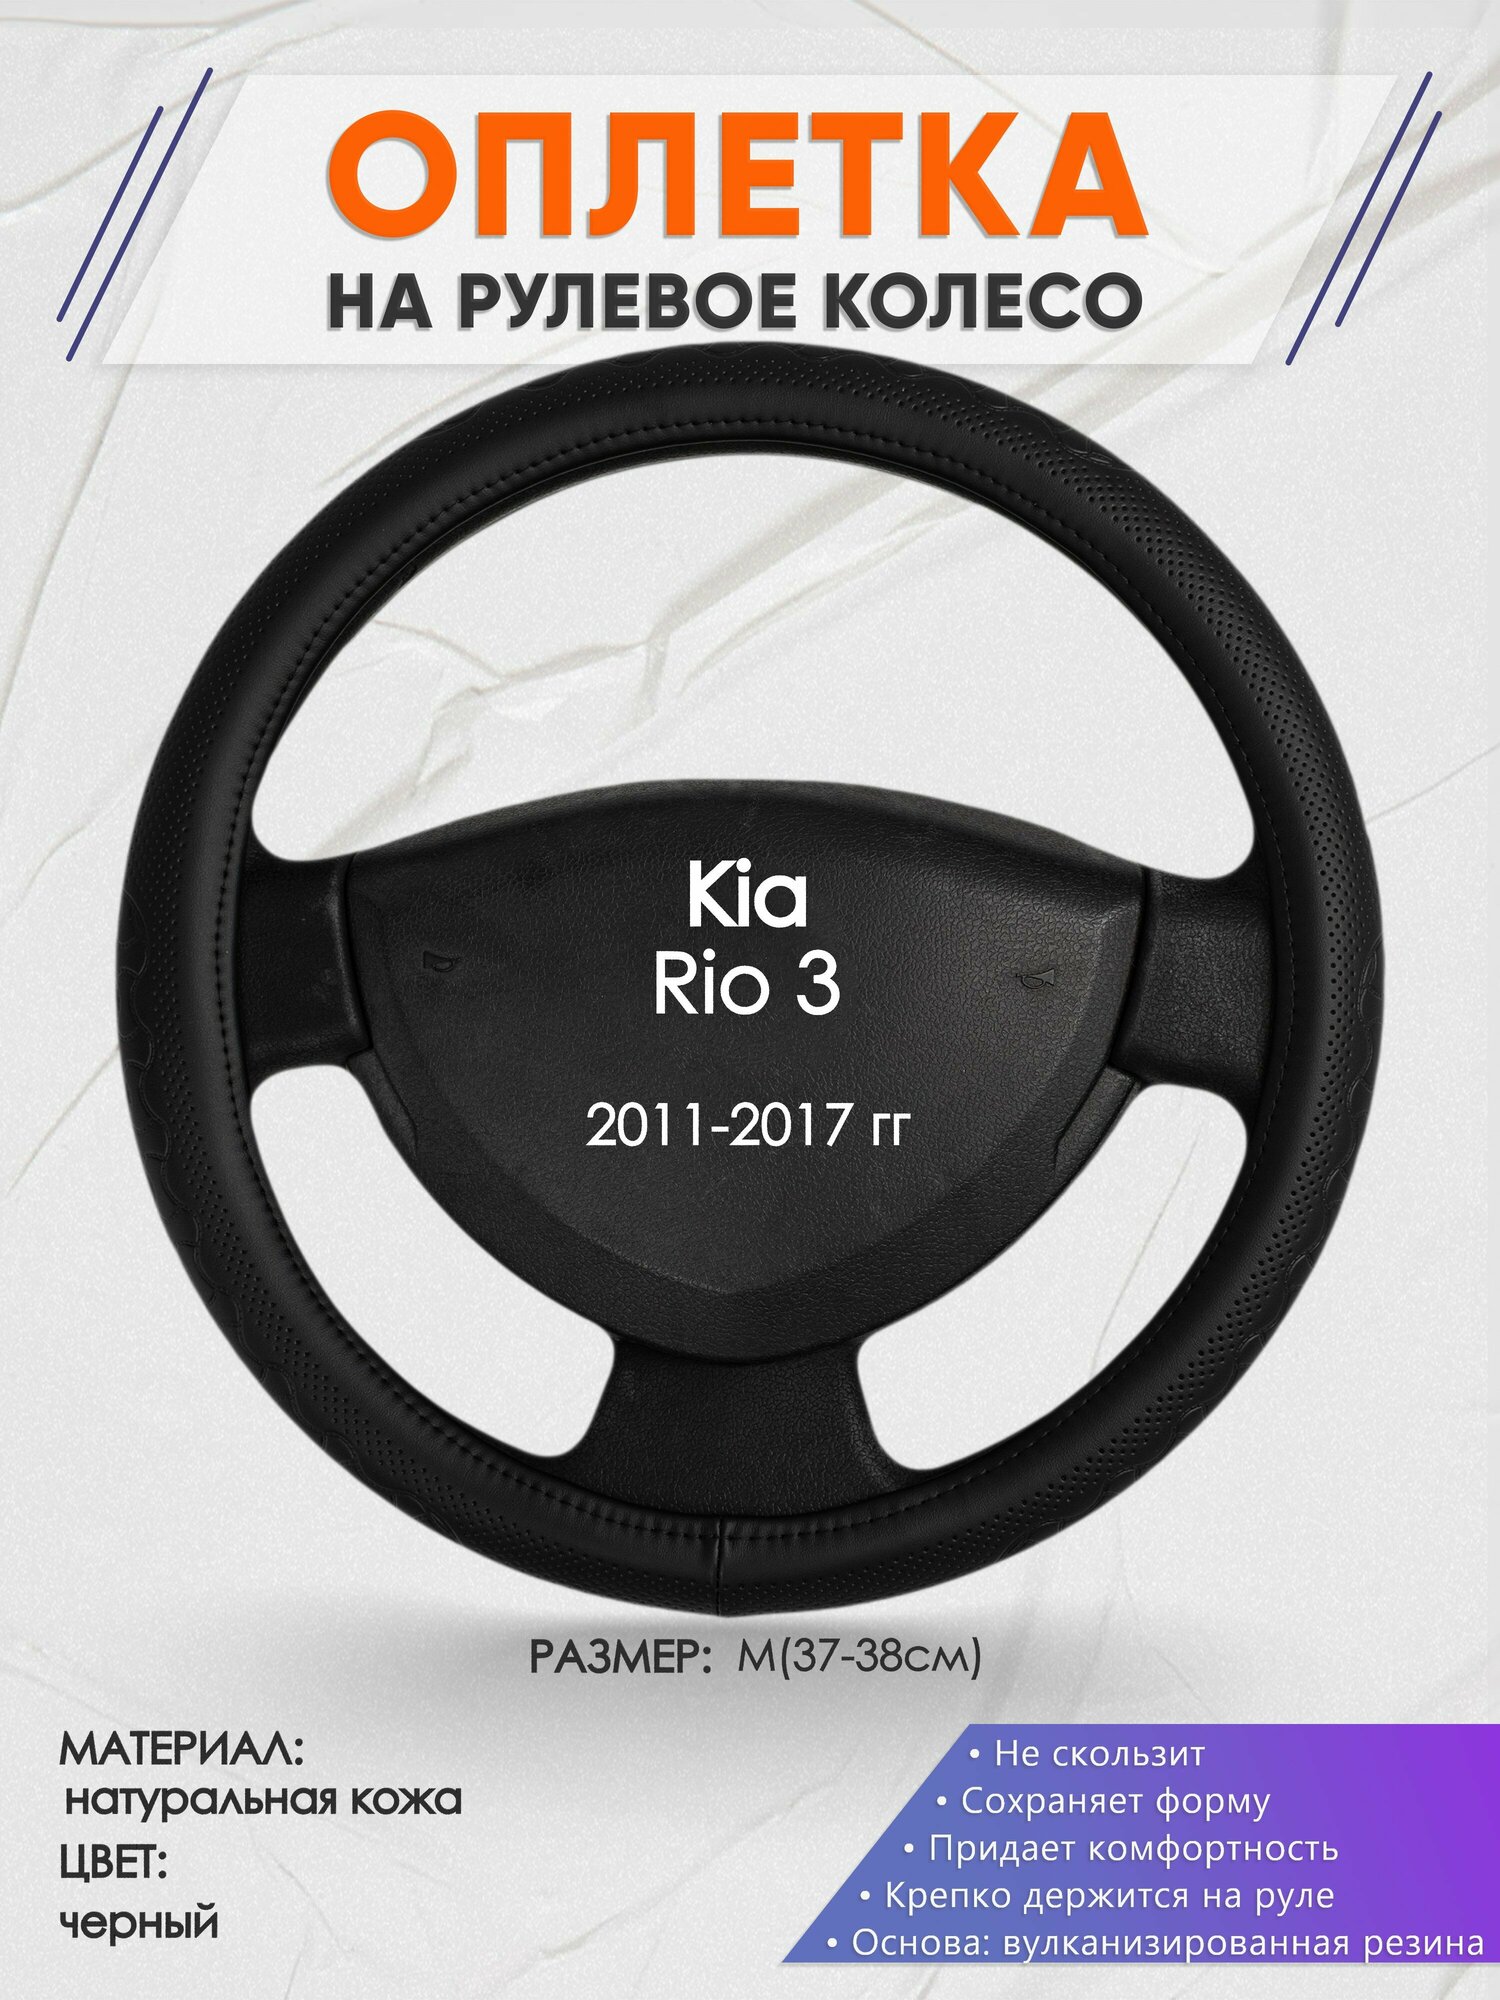 Оплетка на руль для Kia Rio 3(Киа Рио 3 поколение) 2011-2017, M(37-38см), Натуральная кожа 25